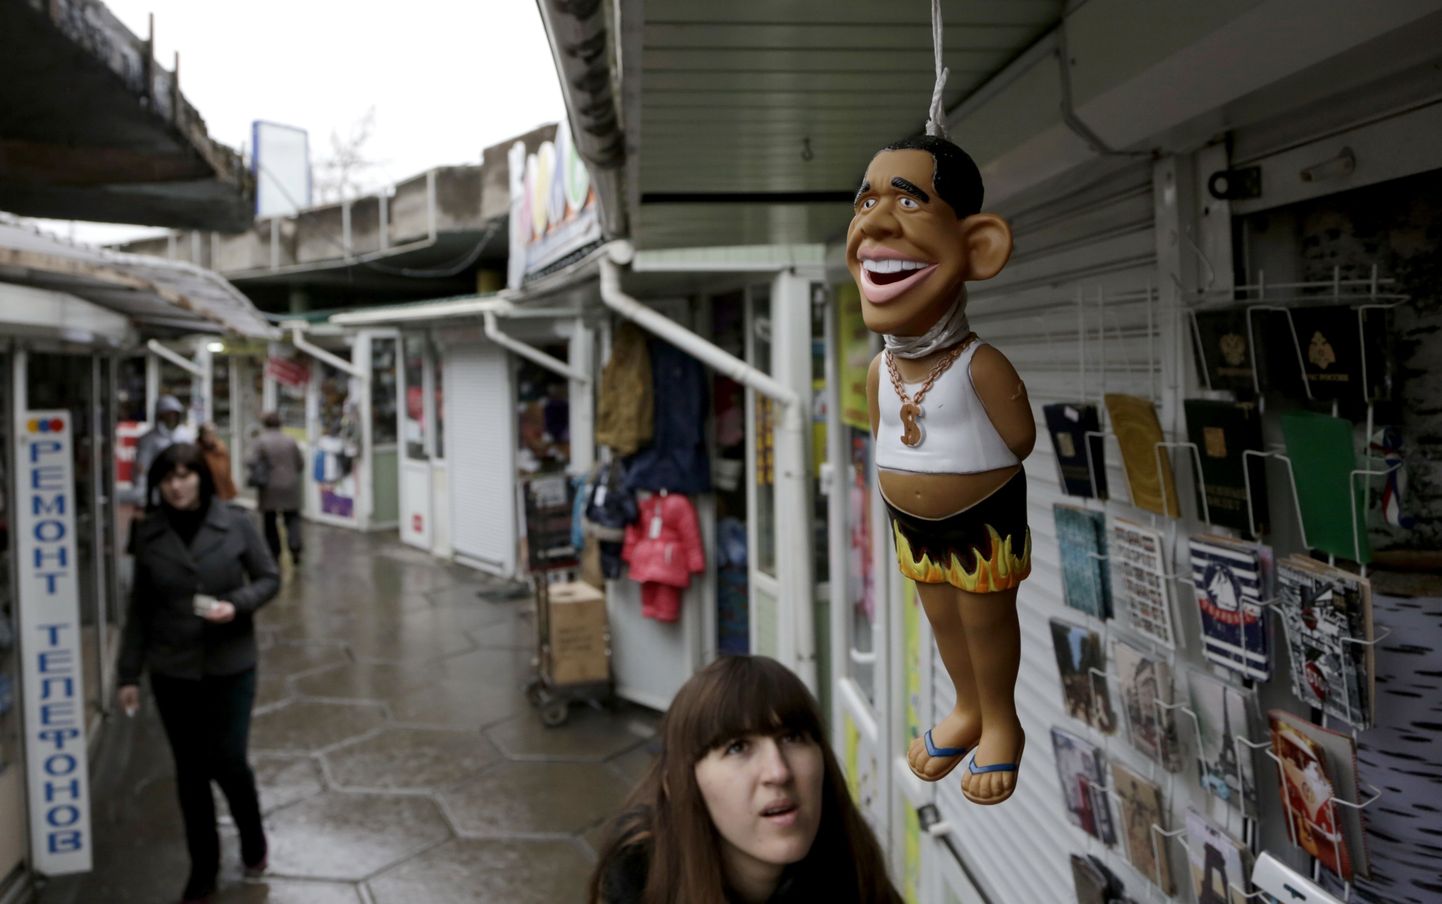 USA presidenti Barack Obamat kujutav nukk Krimmis Simferopoli linna turul.